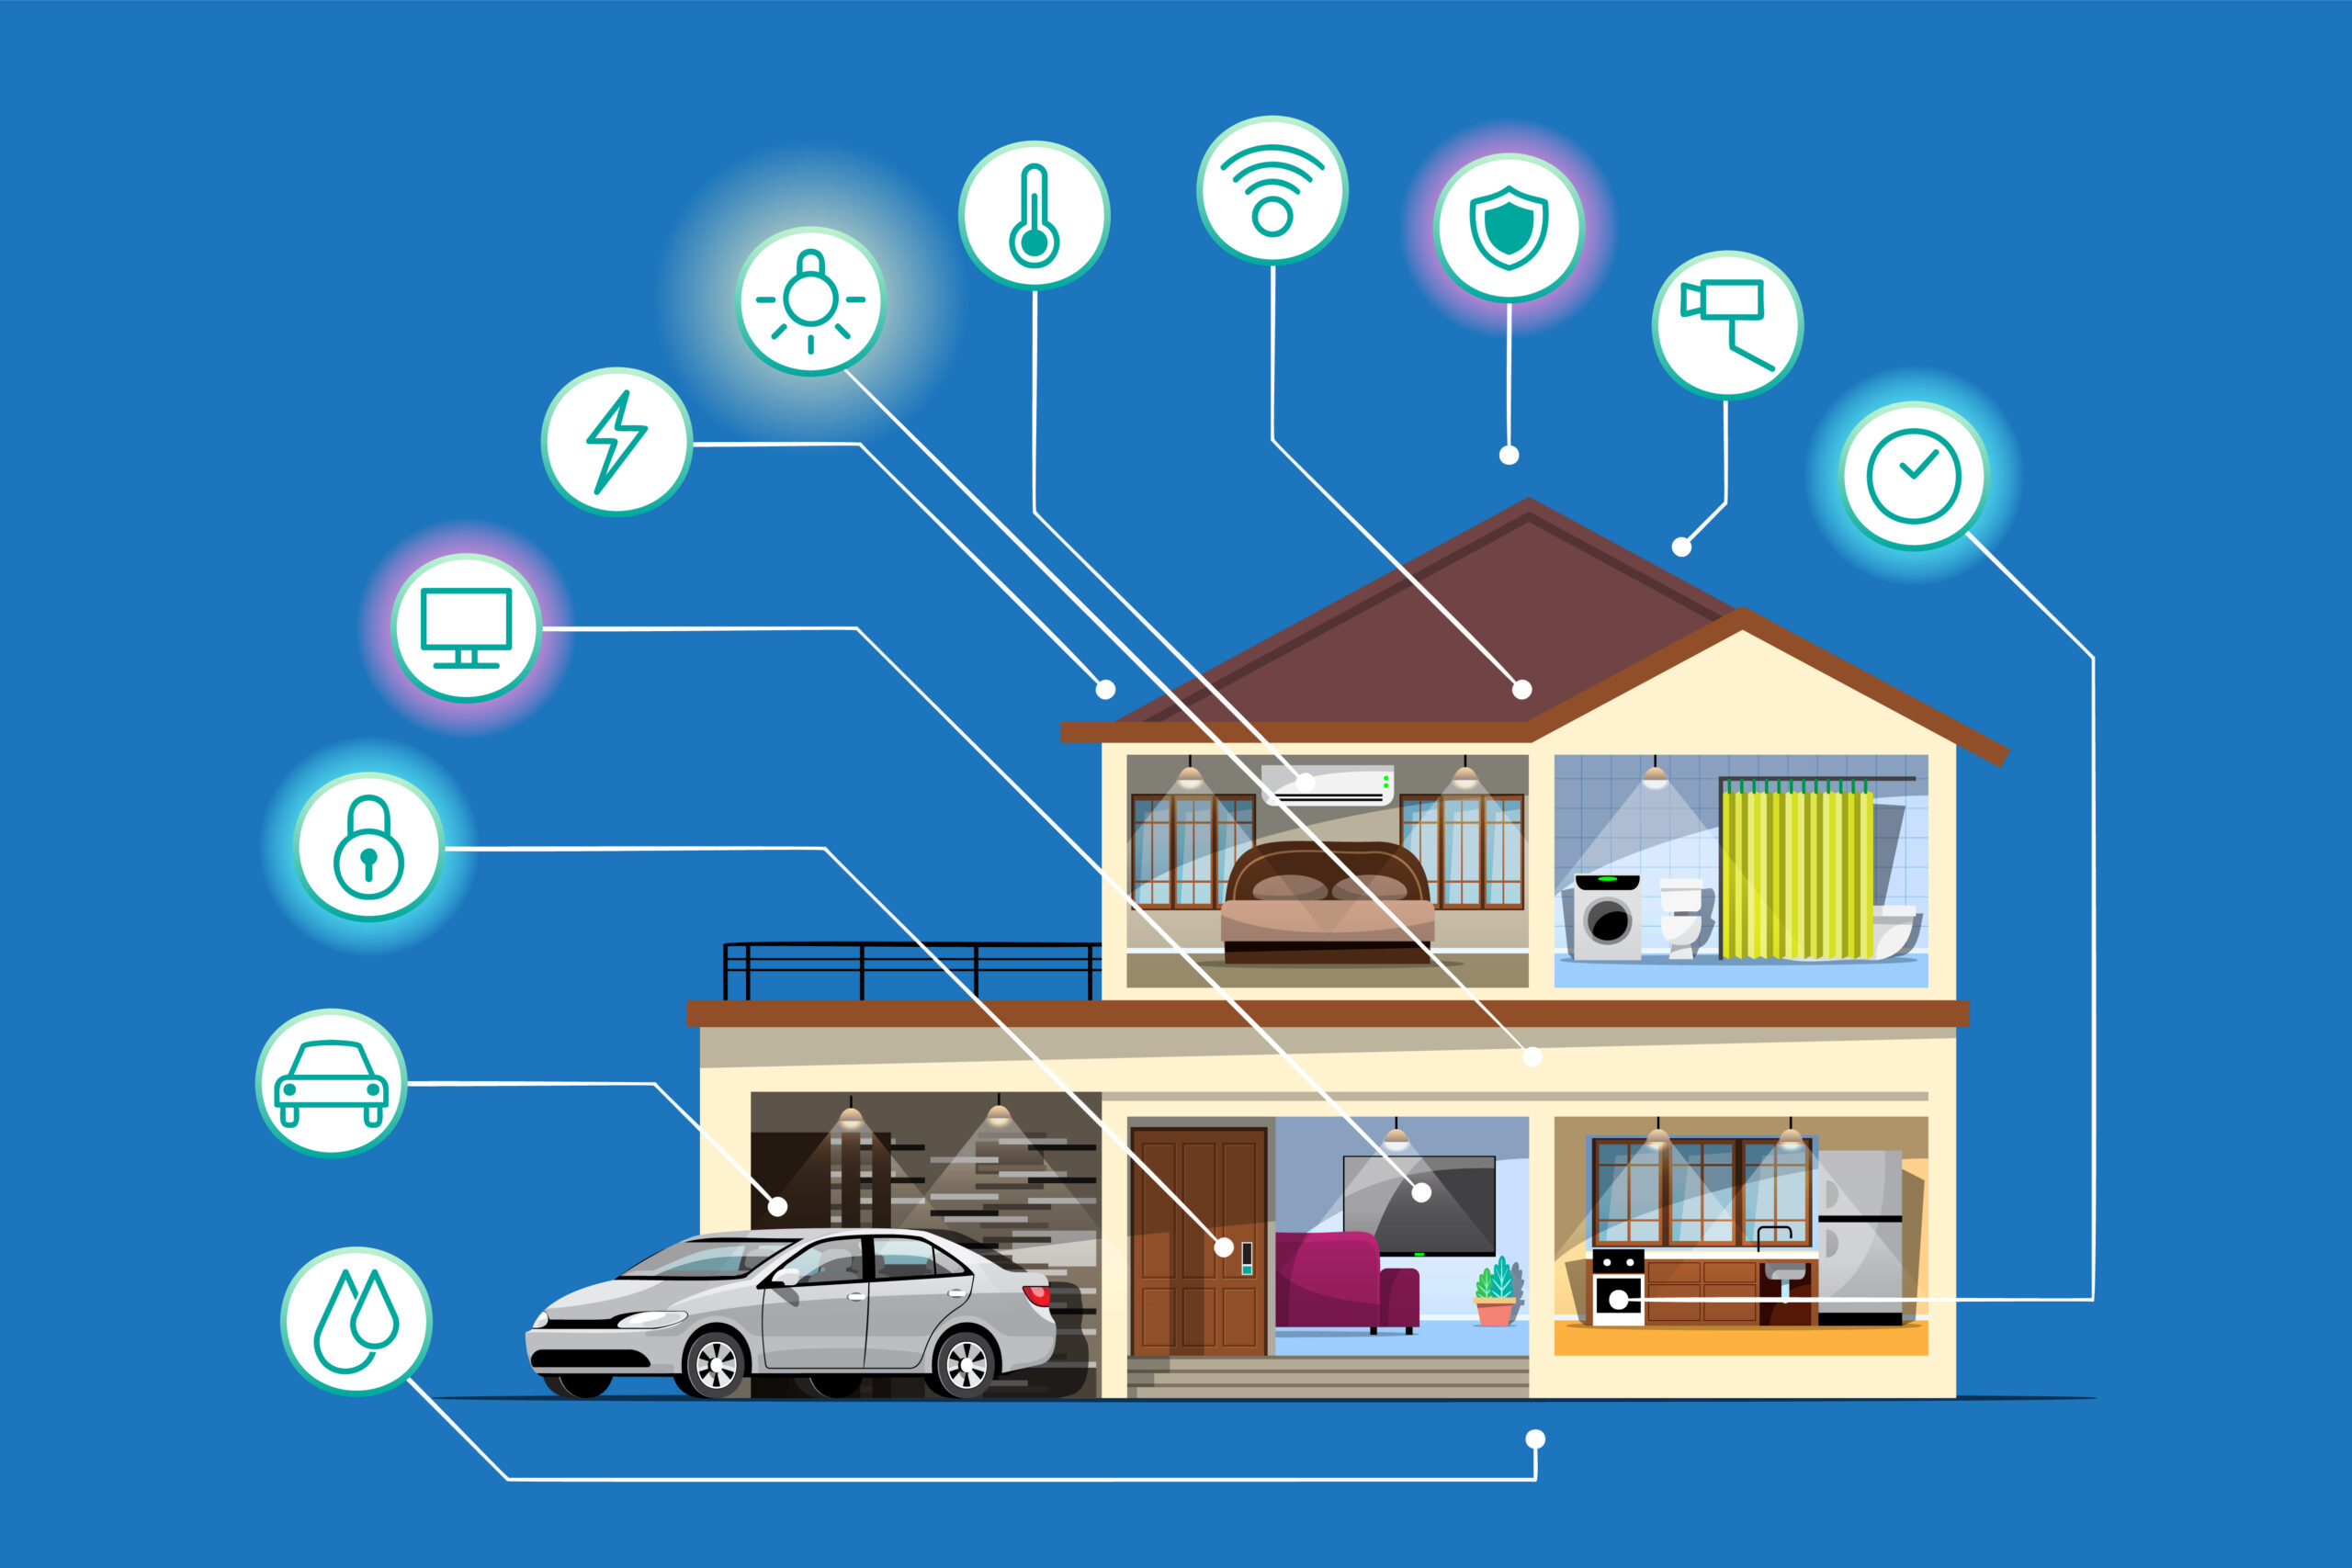 Casa inteligente: automatize seu lar para mais praticidade e segurança -  Blog HiperJN